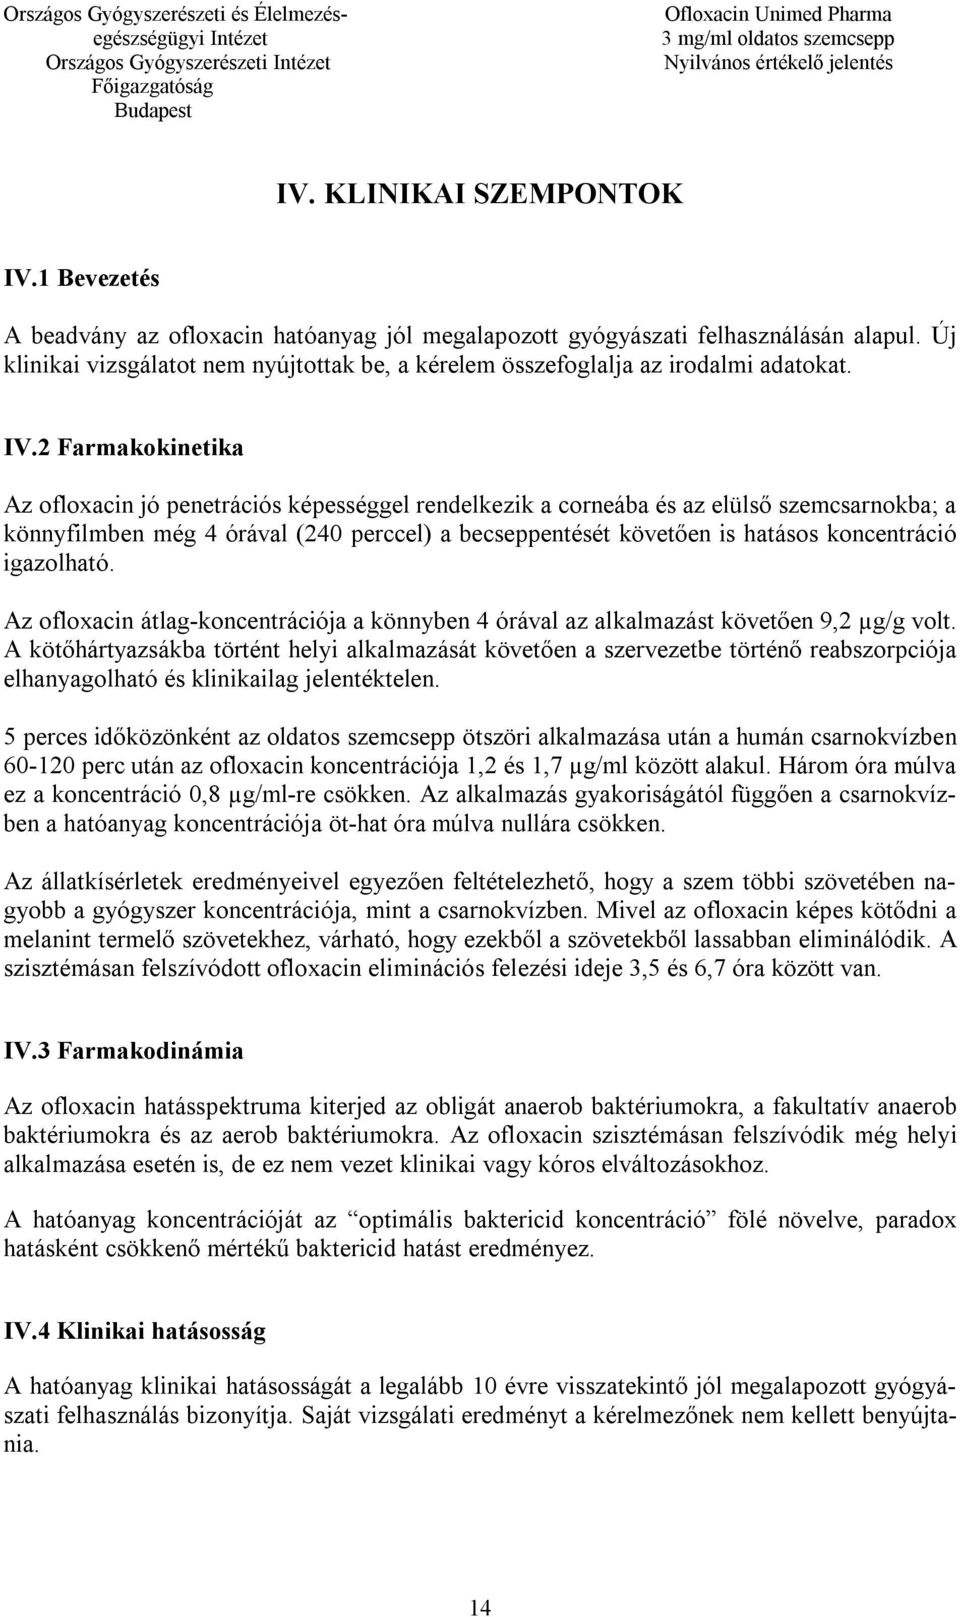 Ofloxacin Unimed Pharma - PDF Ingyenes letöltés